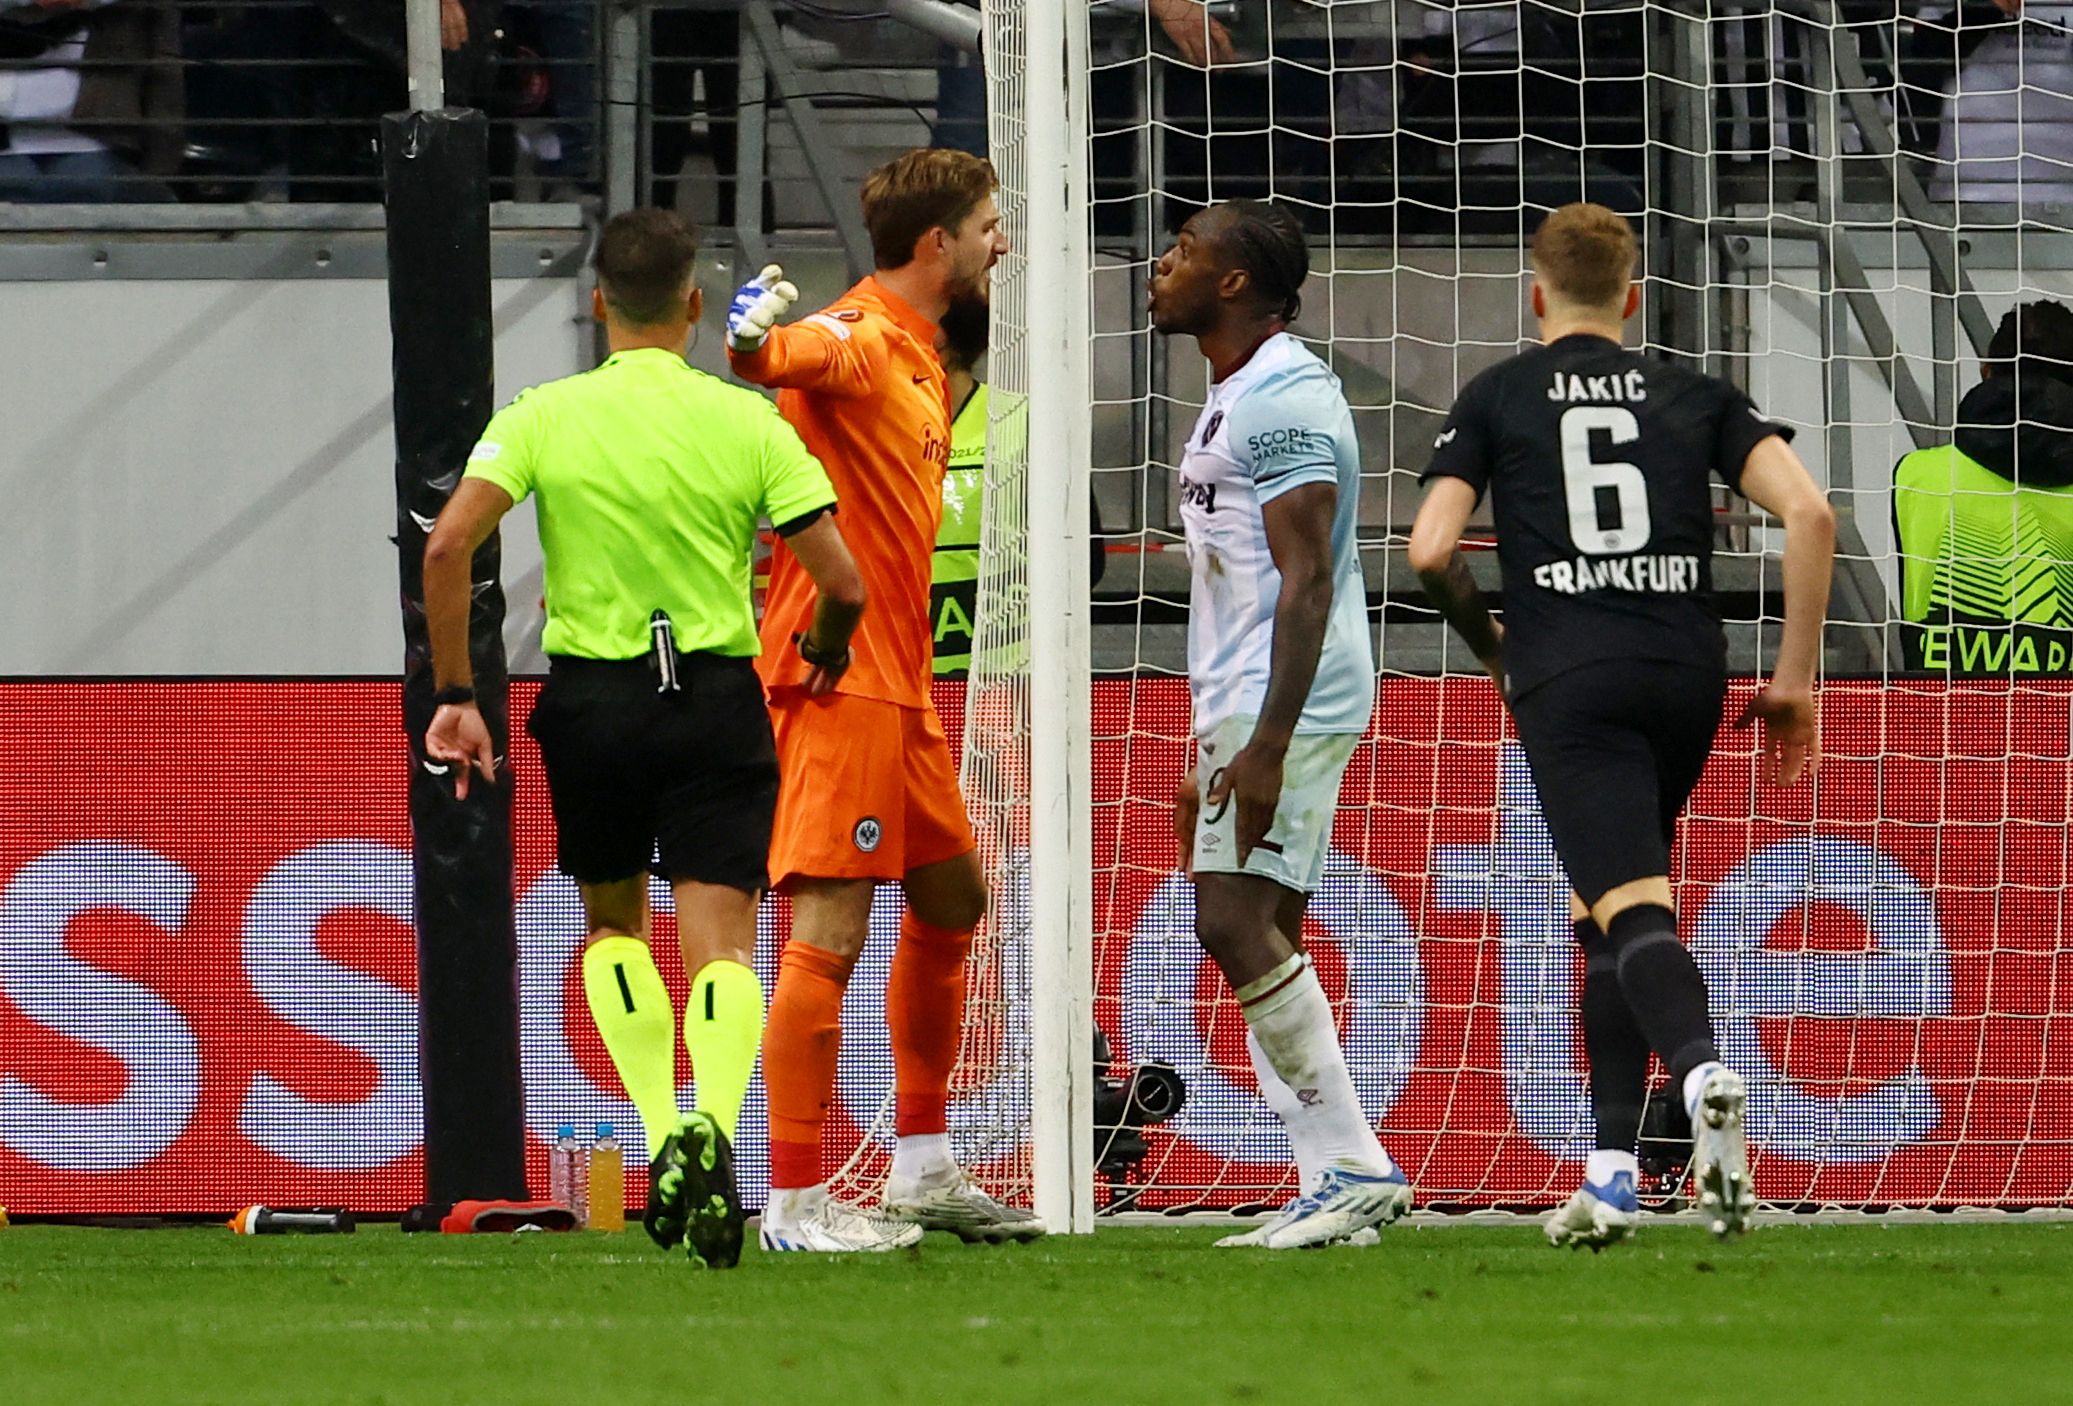 West Ham's Michail Antonio in action vs Eintracht Frankfurt